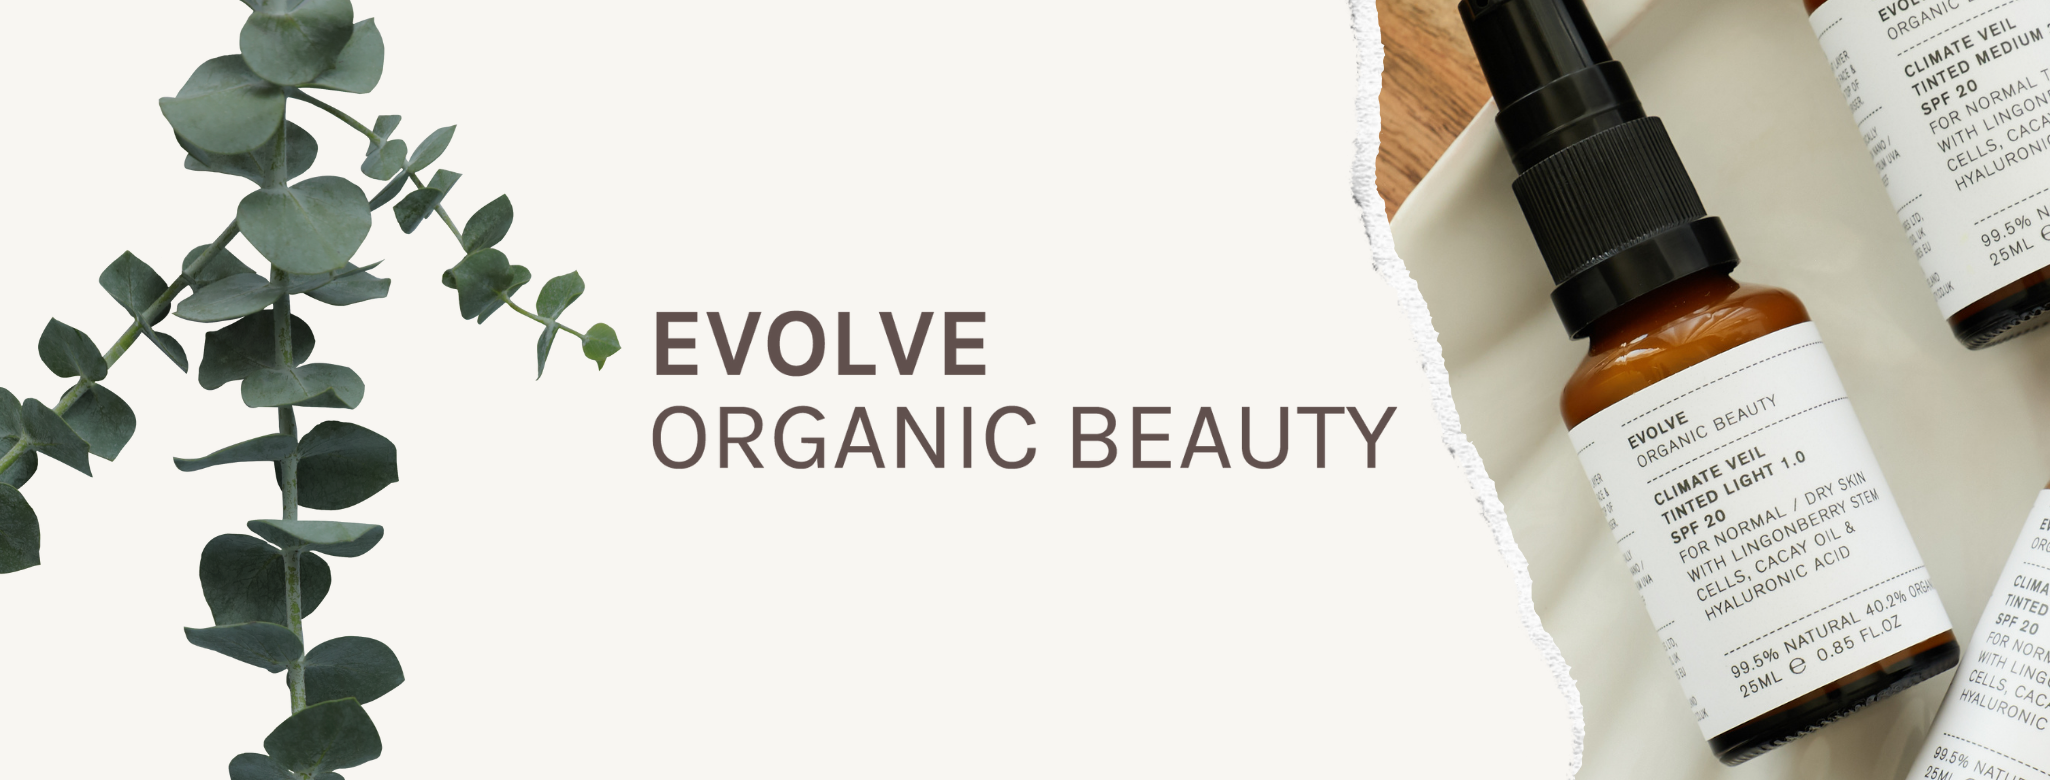 Meet Evolve Organic Beauty!